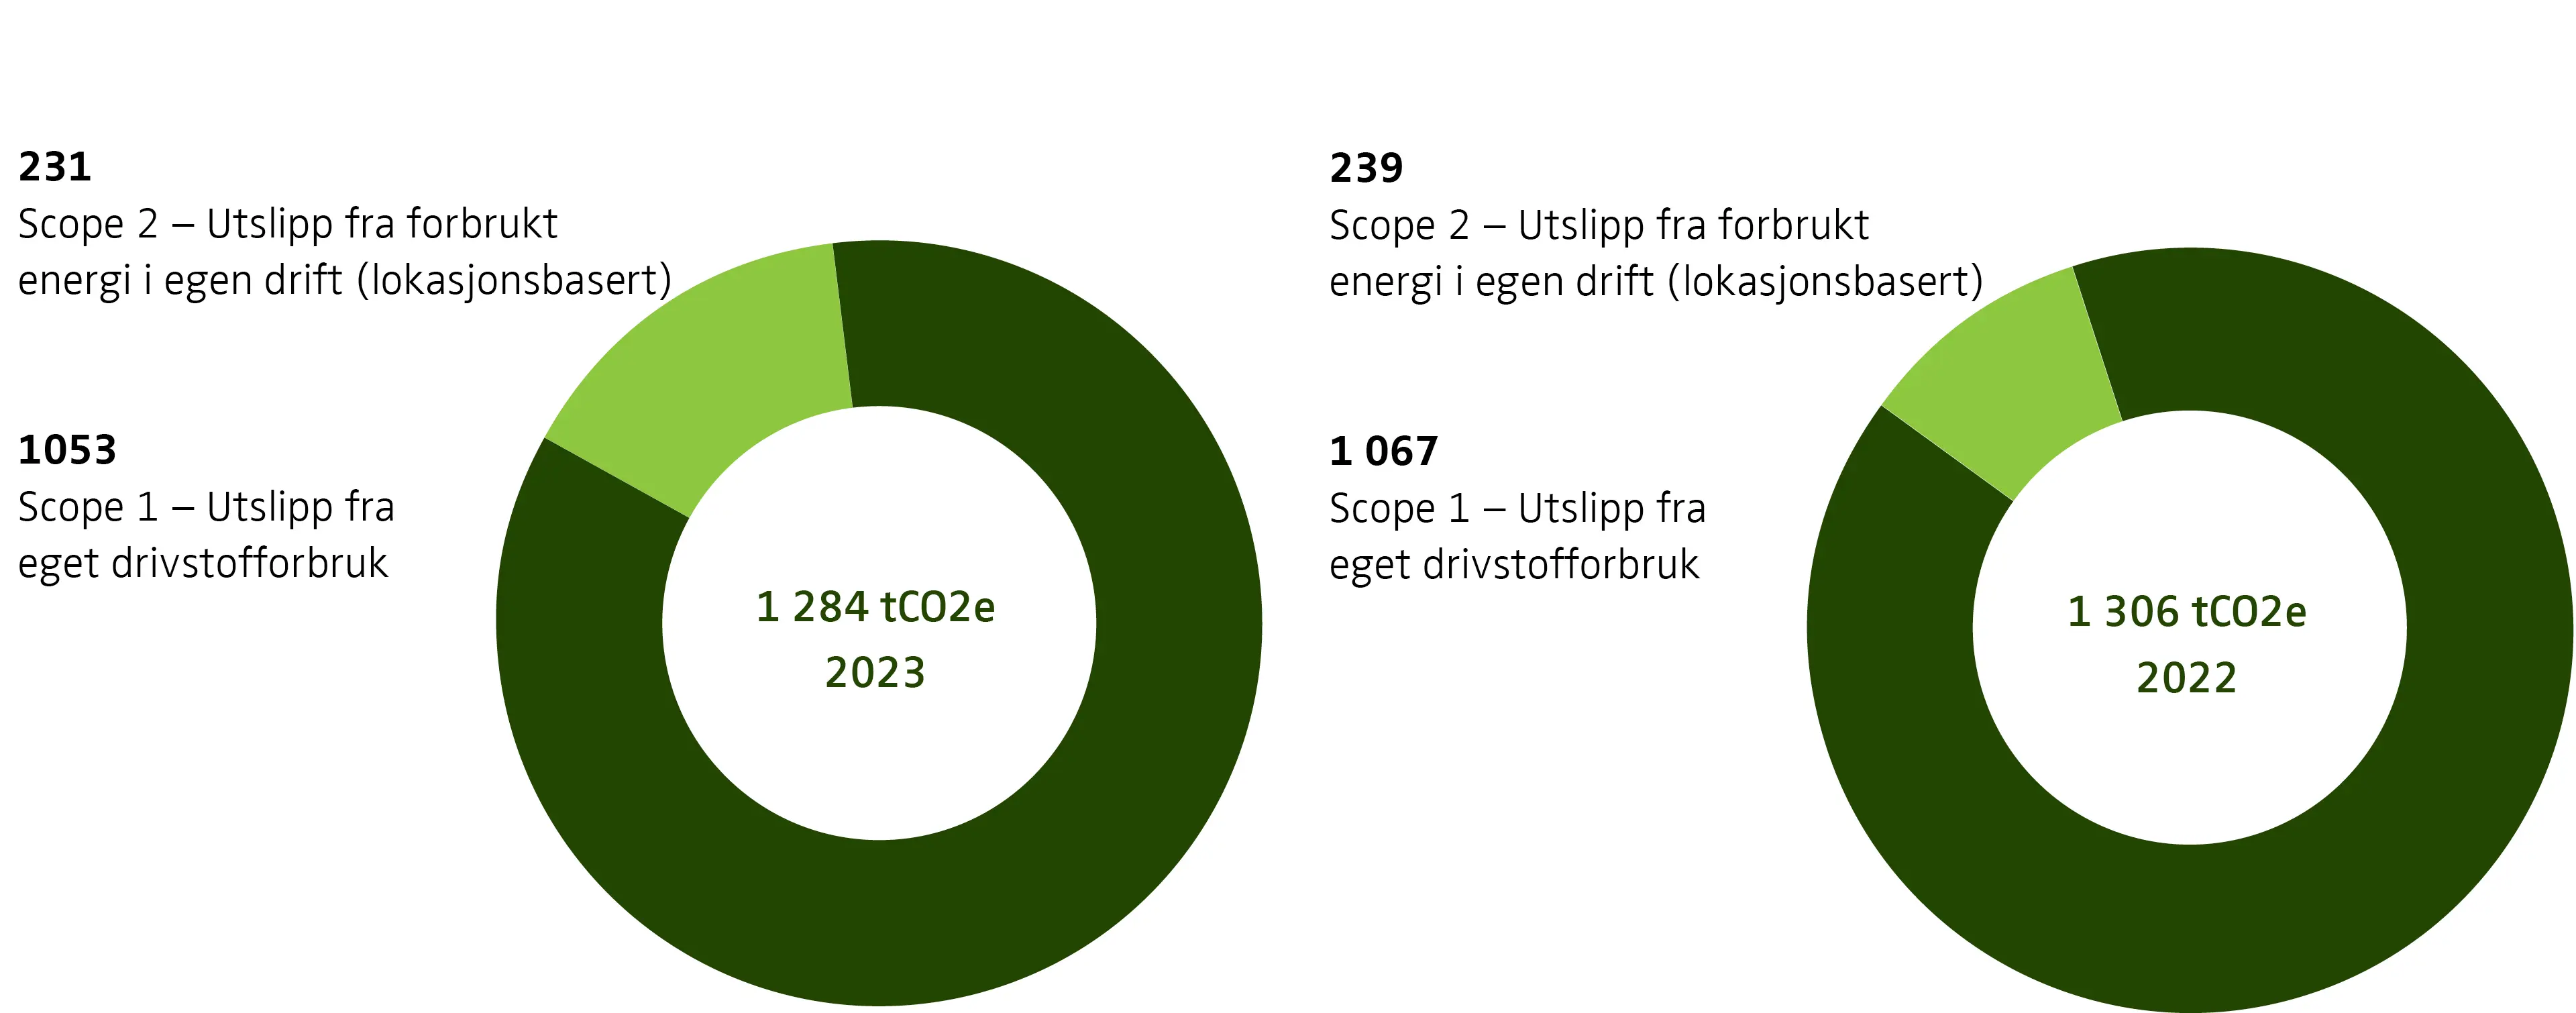 Sammenligning av Norengros' utslipp i scope 1+2 fra 2022 til 2023